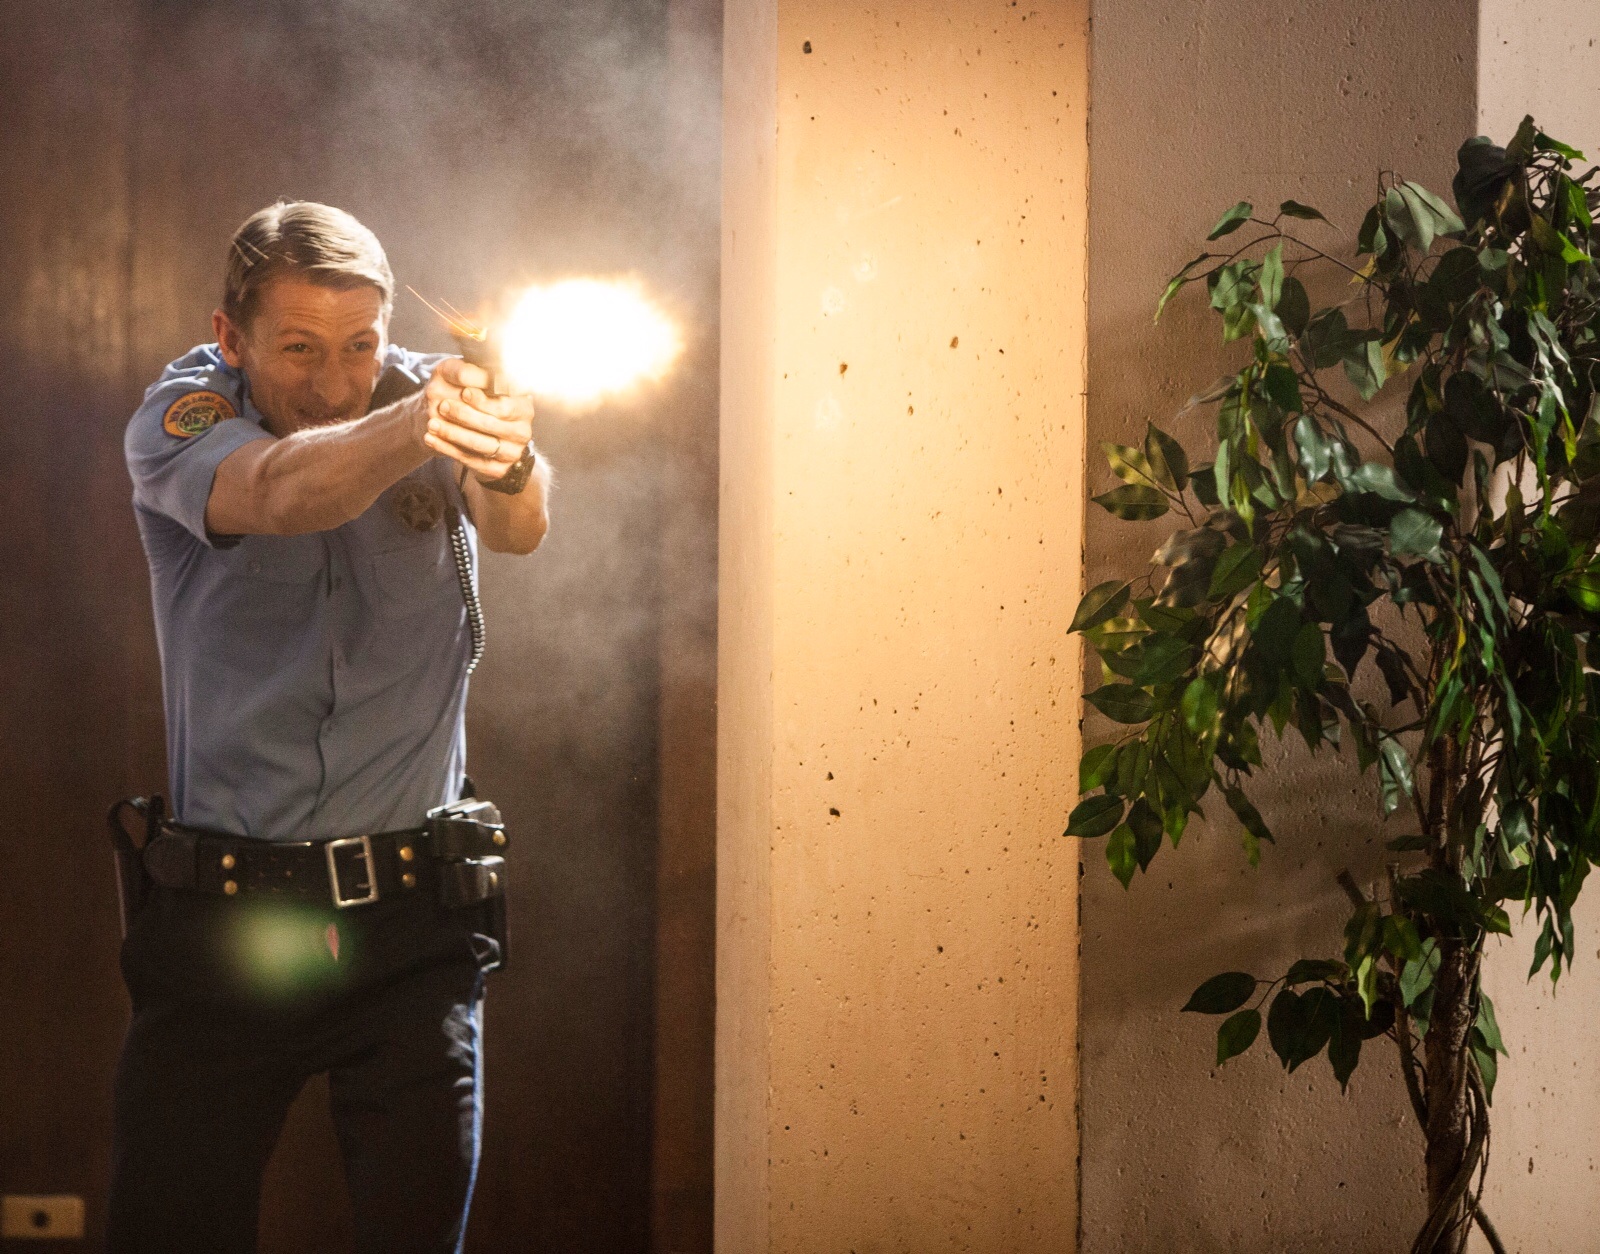 James Hebert as Officer Jason Twitty in Carter & June